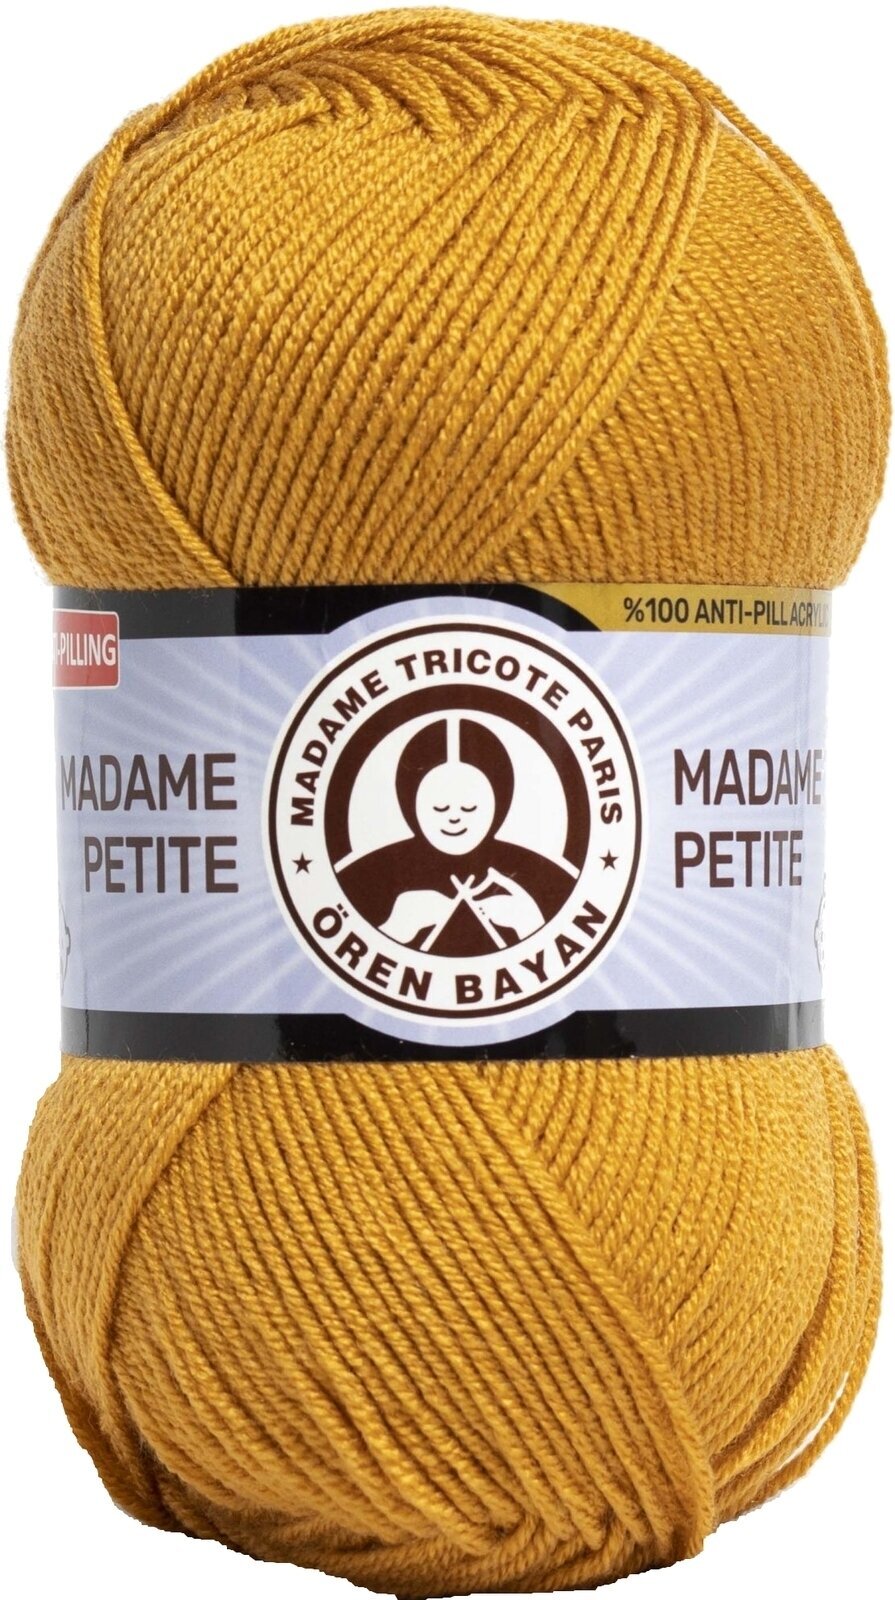 Hilo de tejer Madame Tricote Paris Madame Petite 3848 115 Hilo de tejer